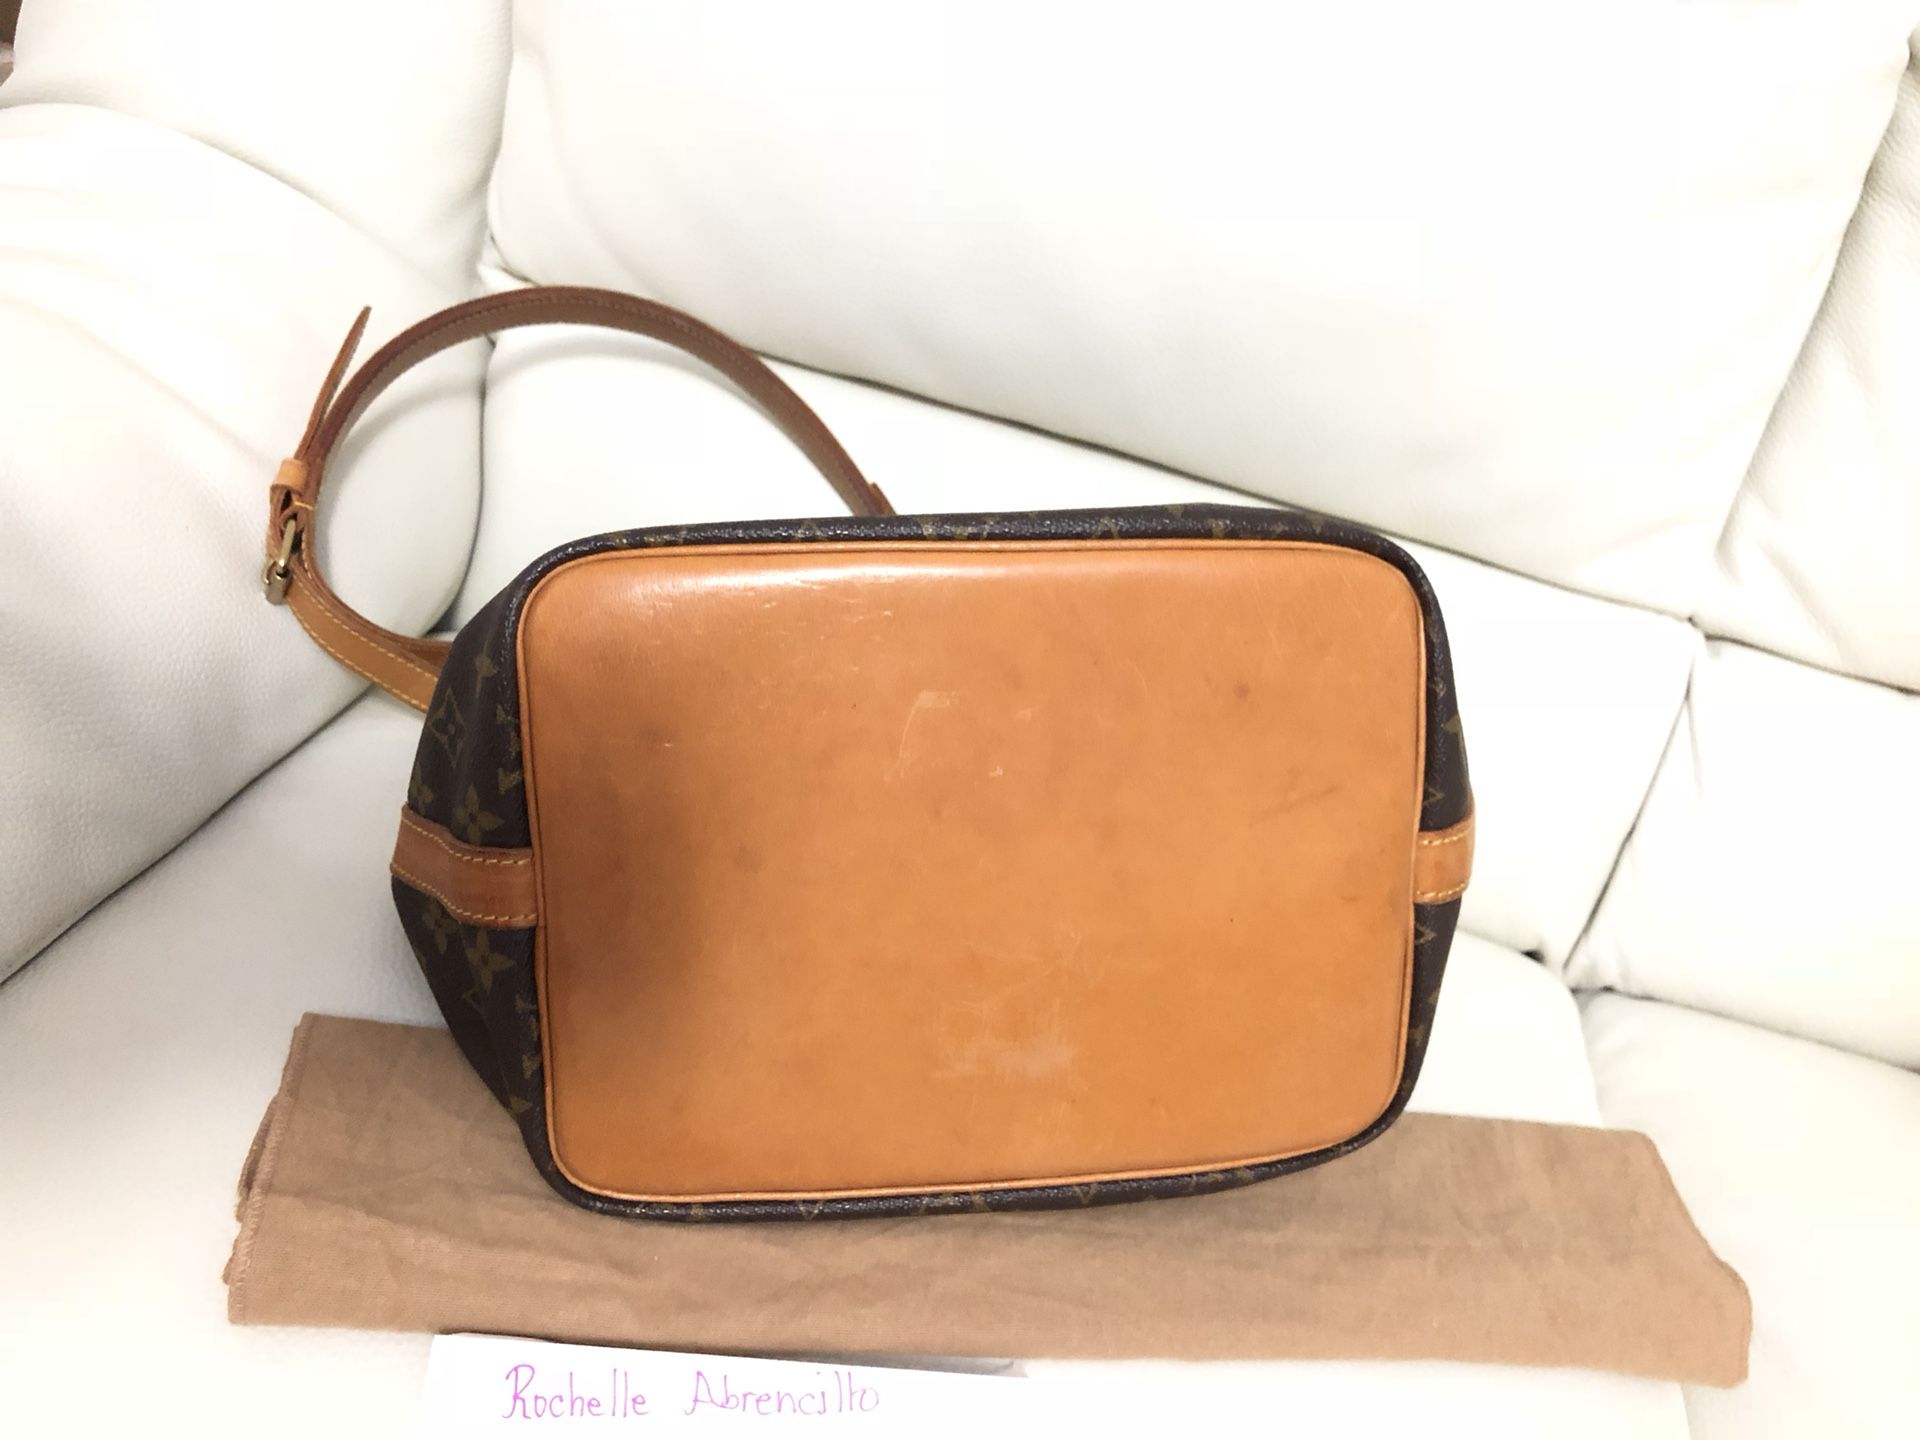 Lv Vintage Bag for Sale in Kapolei, HI - OfferUp